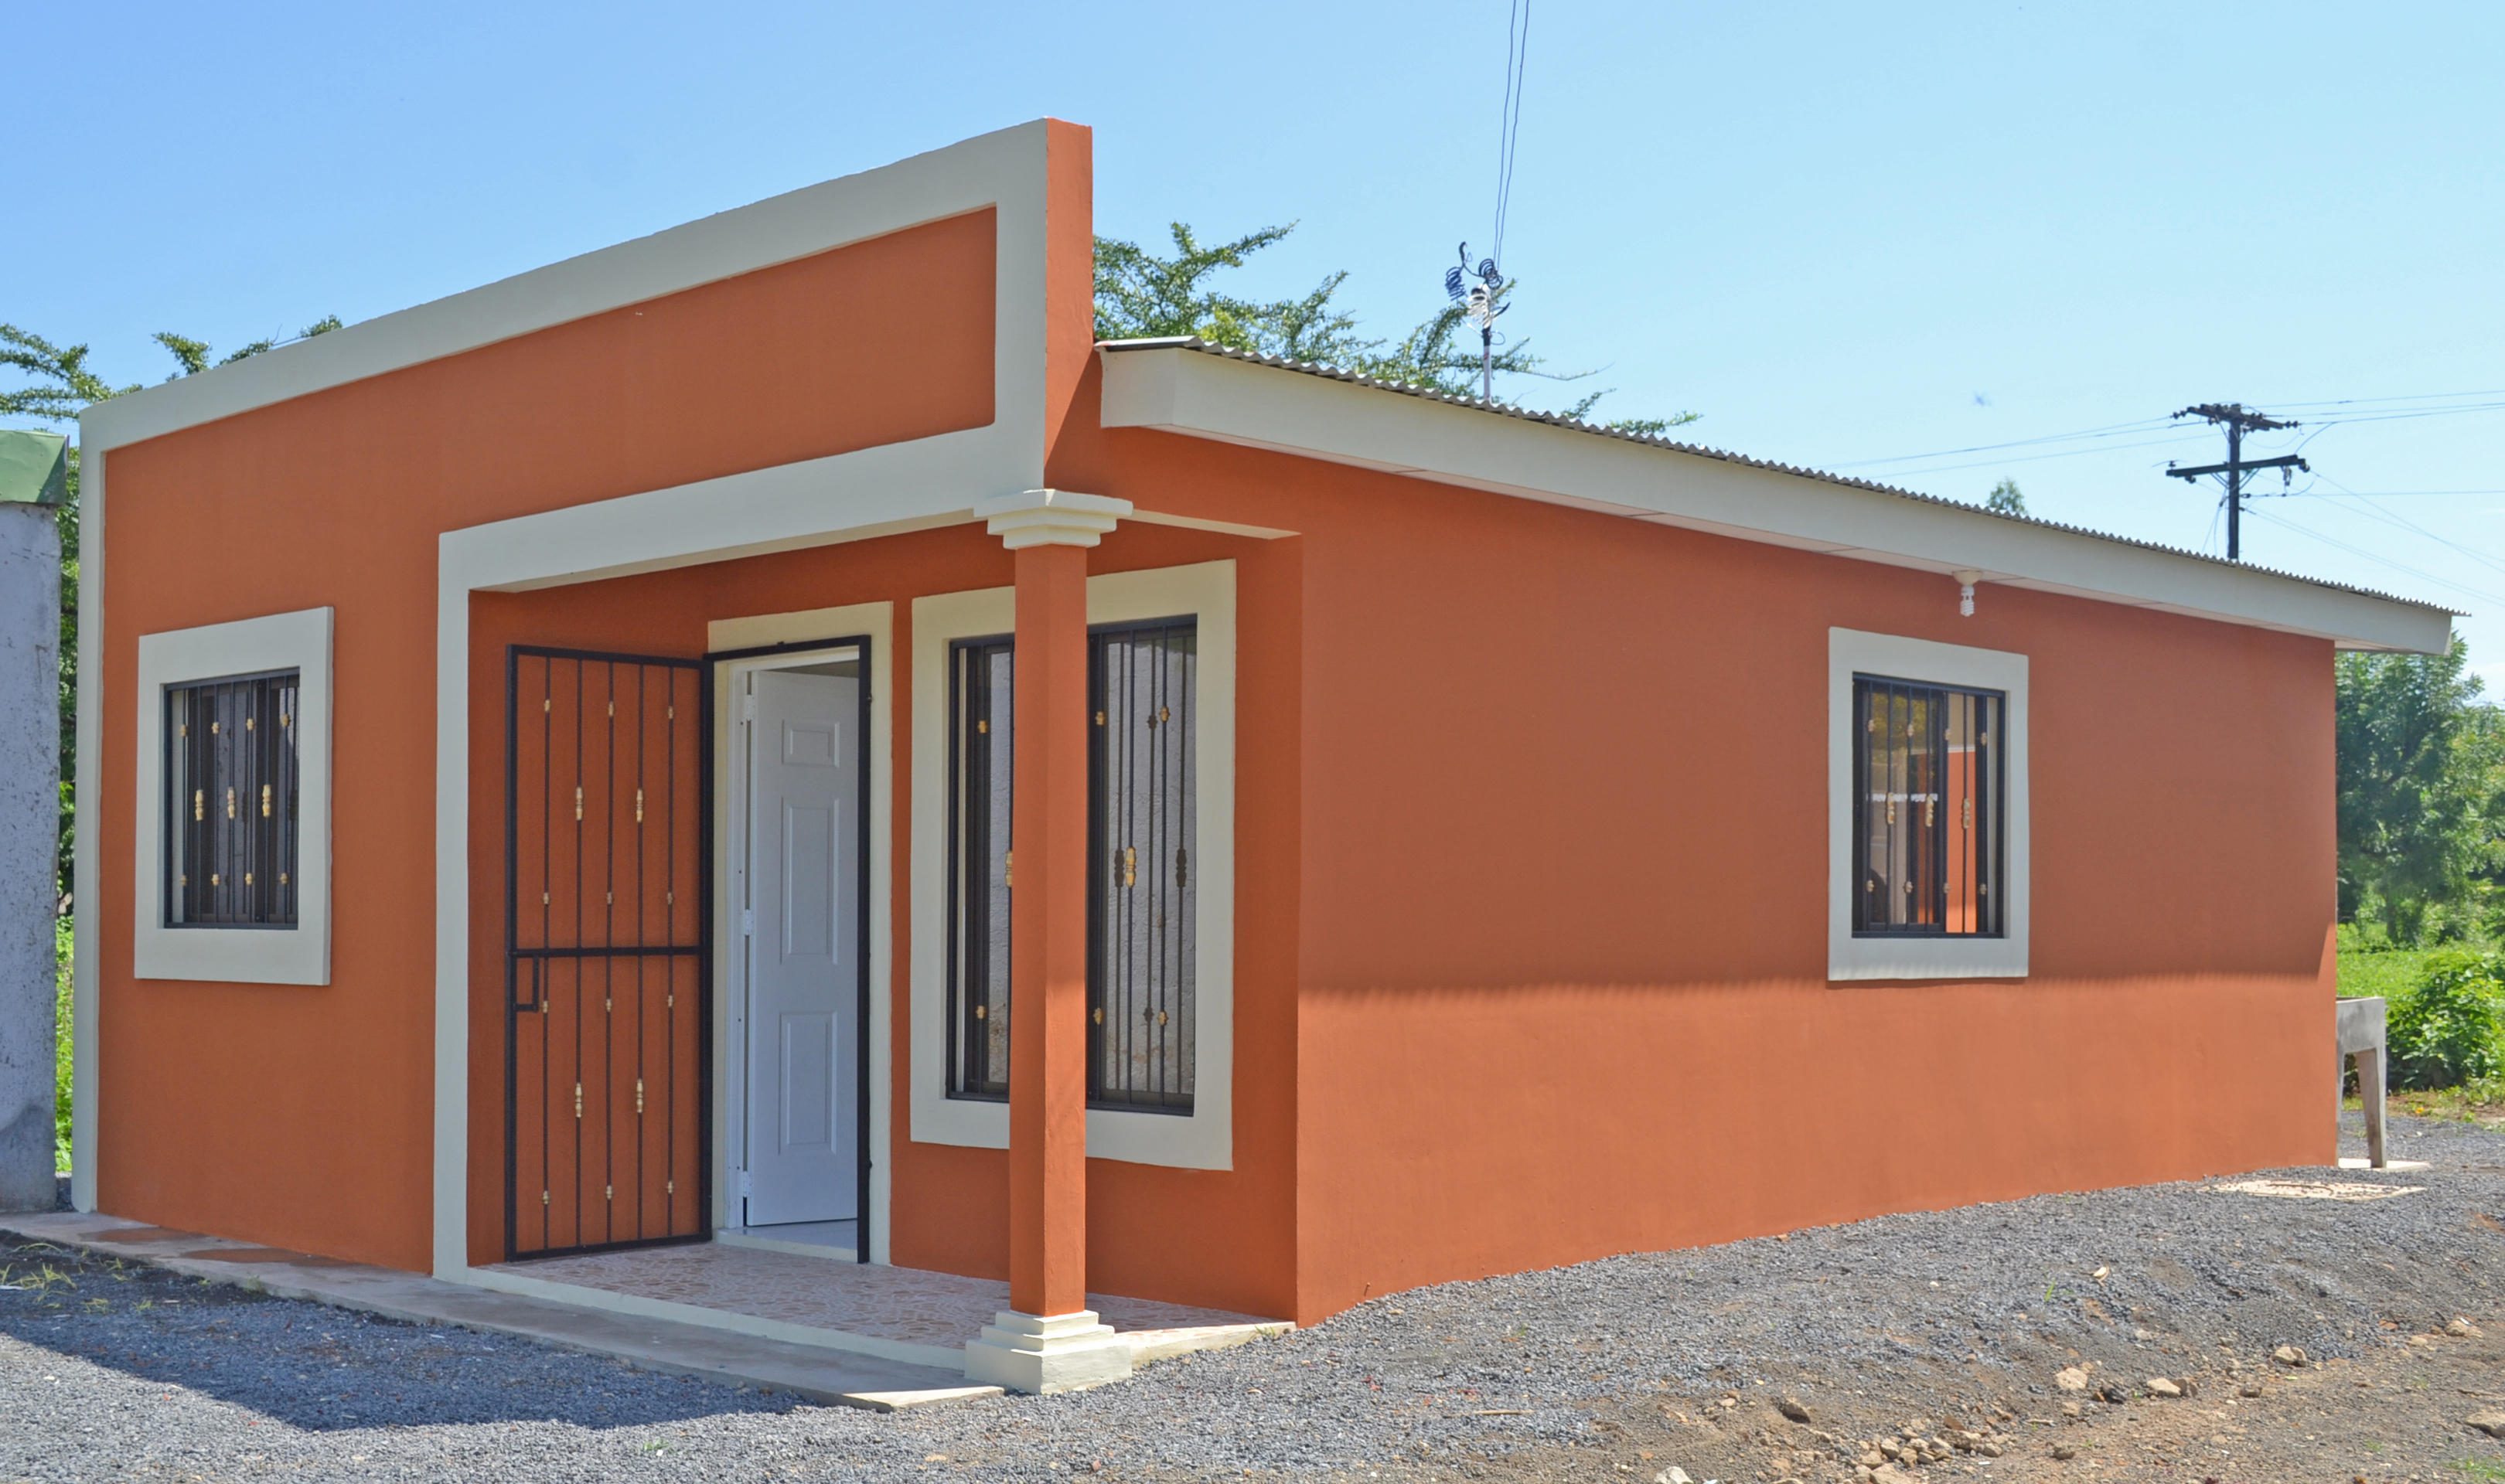 Asociación Roncalli-Juan XXIII entrega viviendas en alianza con Banpro